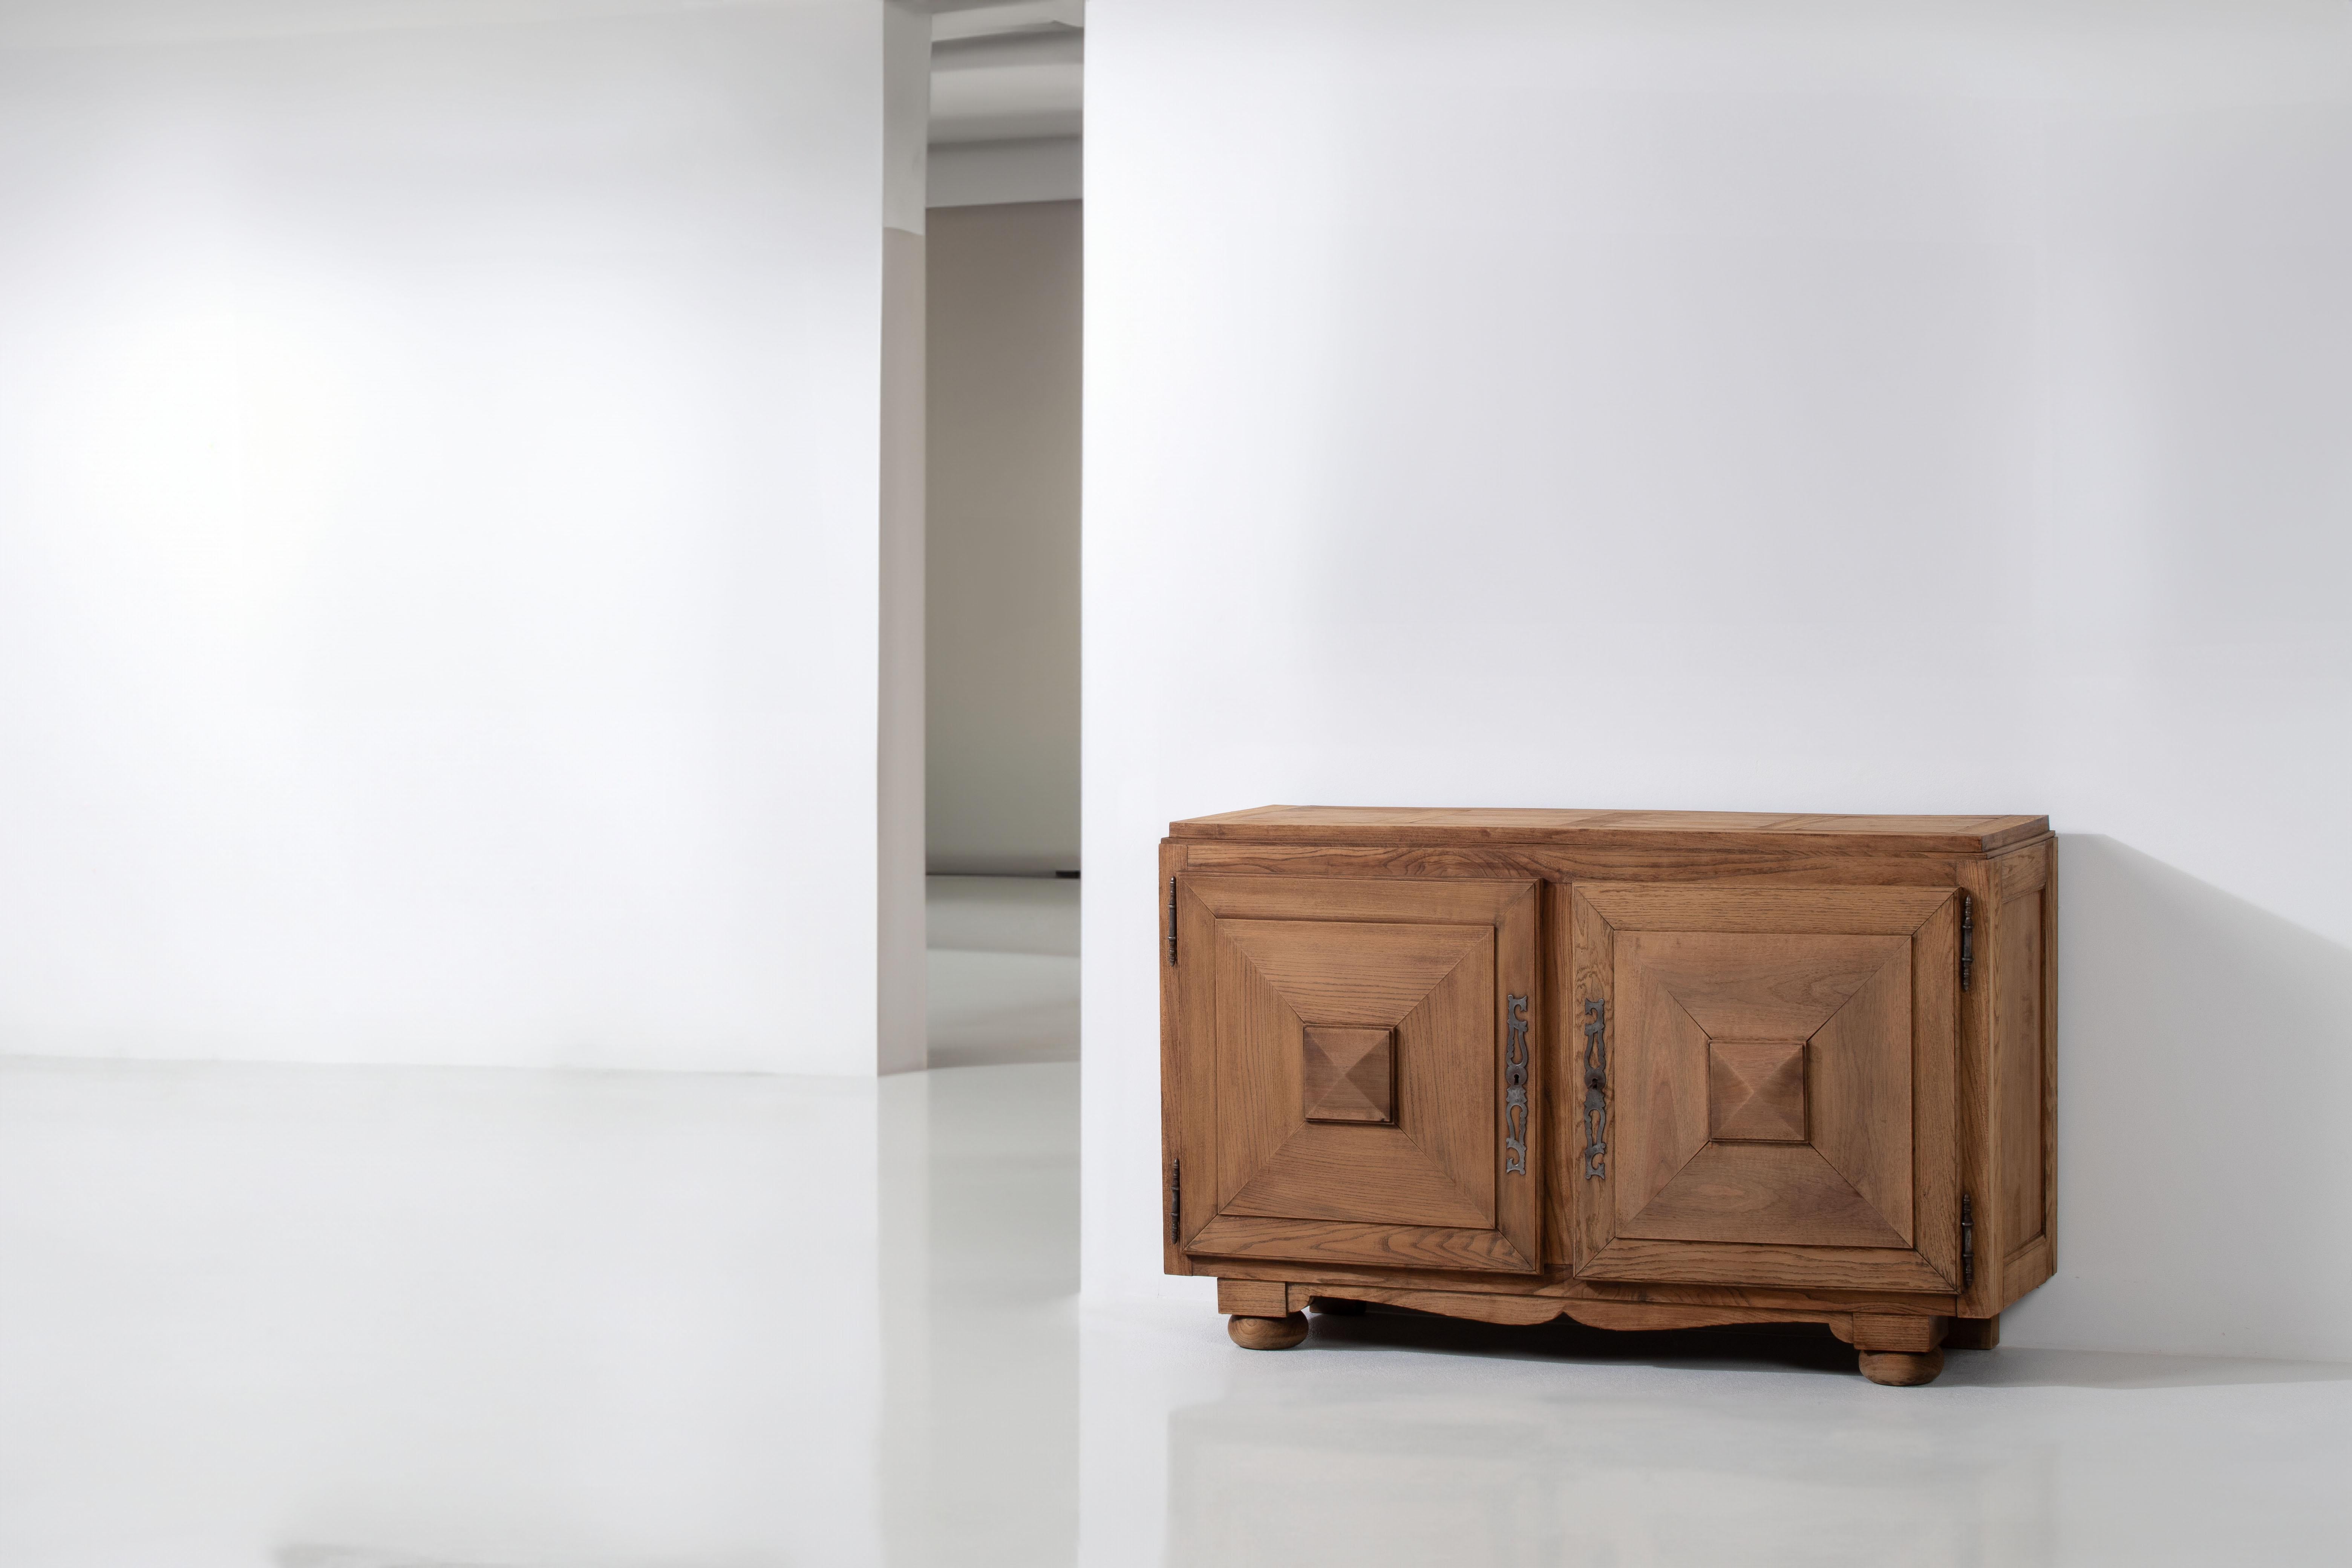 Entrez dans l'élégance intemporelle de la France des années 1930 avec cette armoire en chêne exquise. Fabriquée avec soin en chêne massif, cette pièce met en valeur les sensibilités de design raffiné de l'époque.

Le meuble comporte deux portes